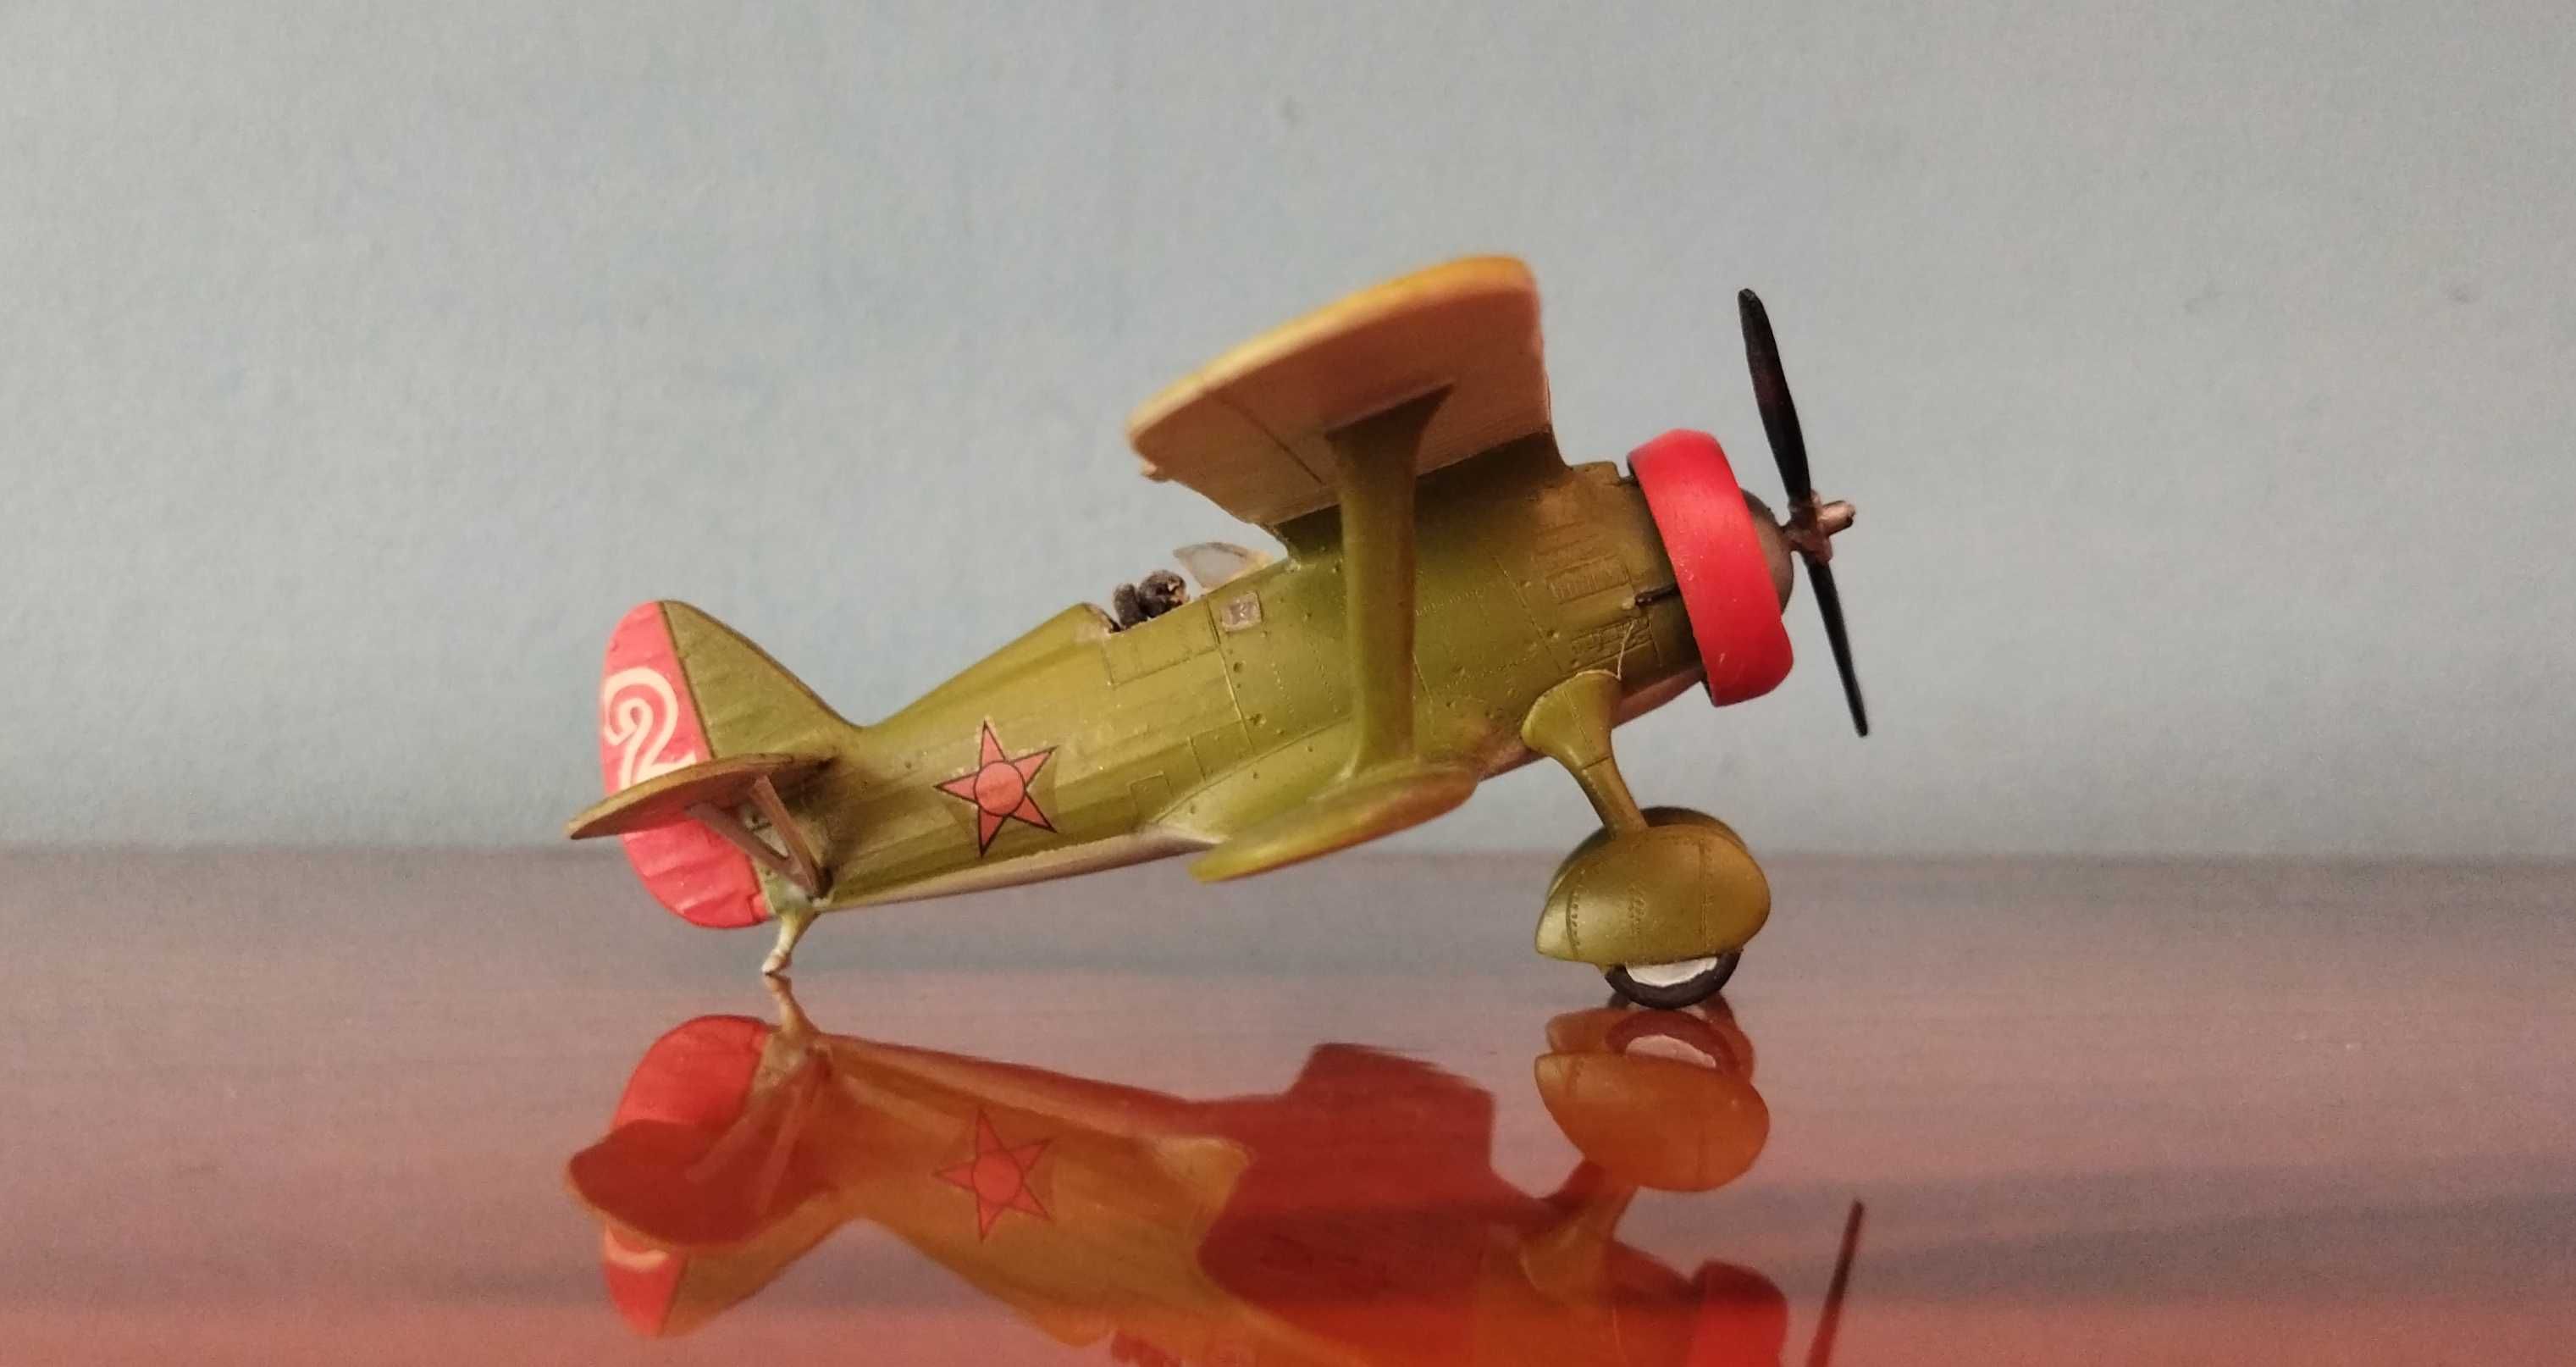 подарочная модель самолёта Поликарпов И-15 1:72 (MSP)